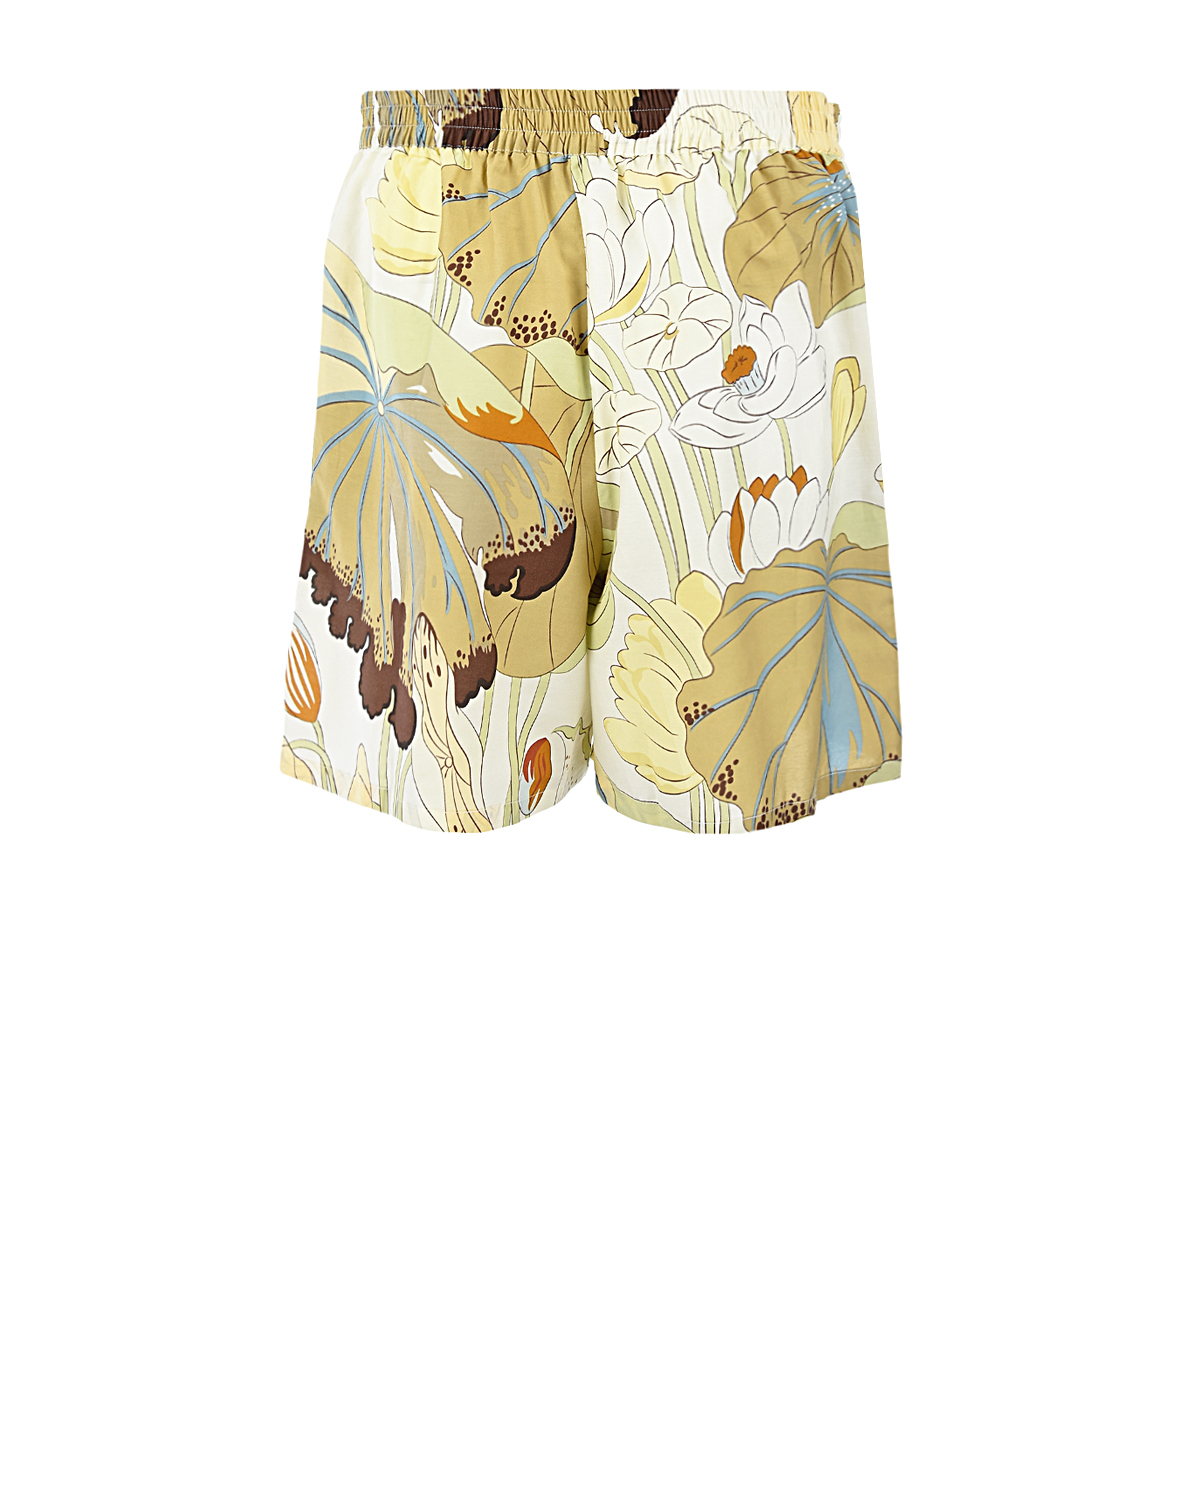 Комплект с принтом "Лотосы и пальмы" Olivia von Halle, размер 40, цвет кремовый - фото 9